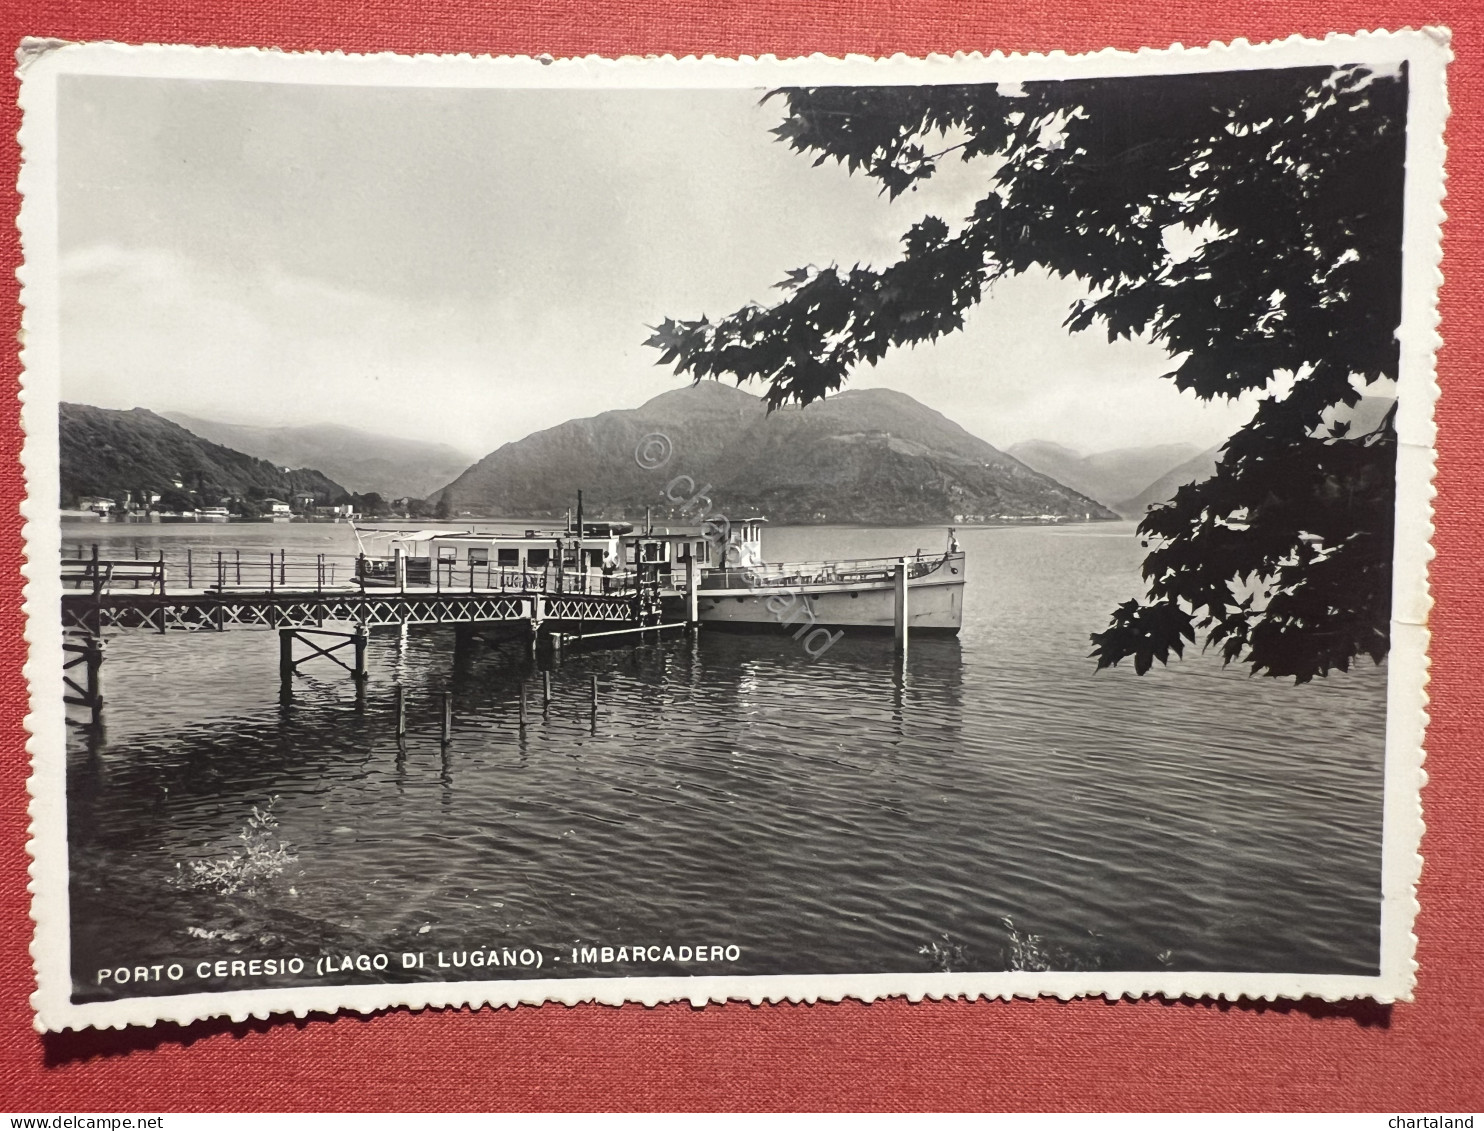 Cartolina - Porto Ceresio ( Lago Di Lugano ) - Imbarcadero - 1956 - Varese